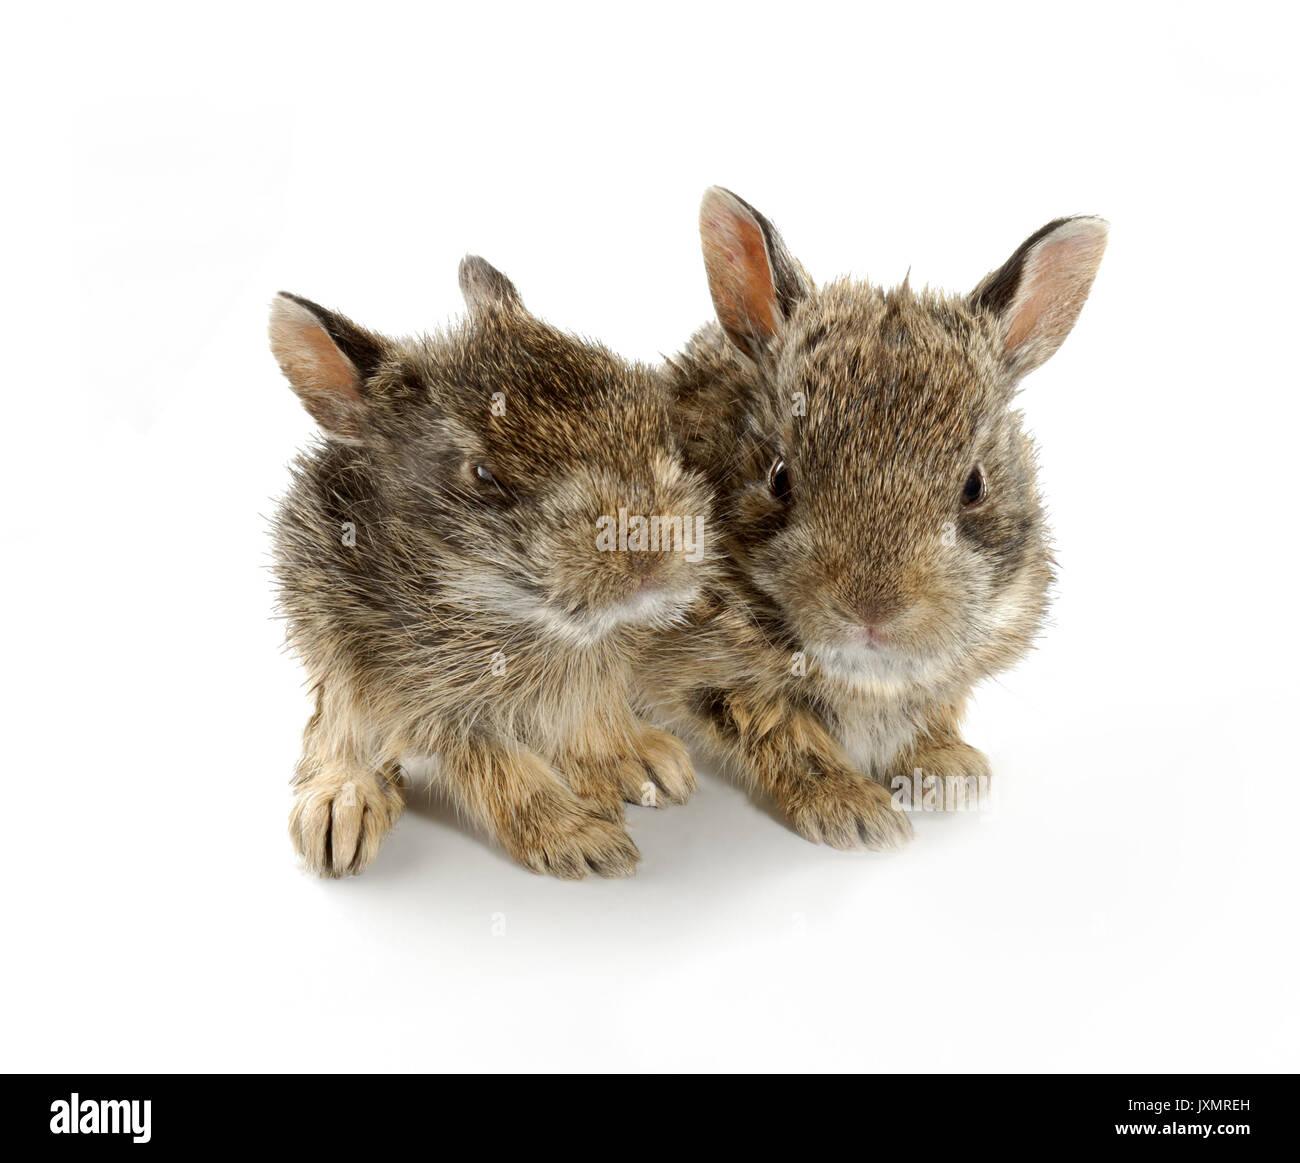 Dos conejos conejito bebé salvaje encontrado en praderas canadienses. Estos son salvajes hermanos que fueron separados de la madre. Foto de stock